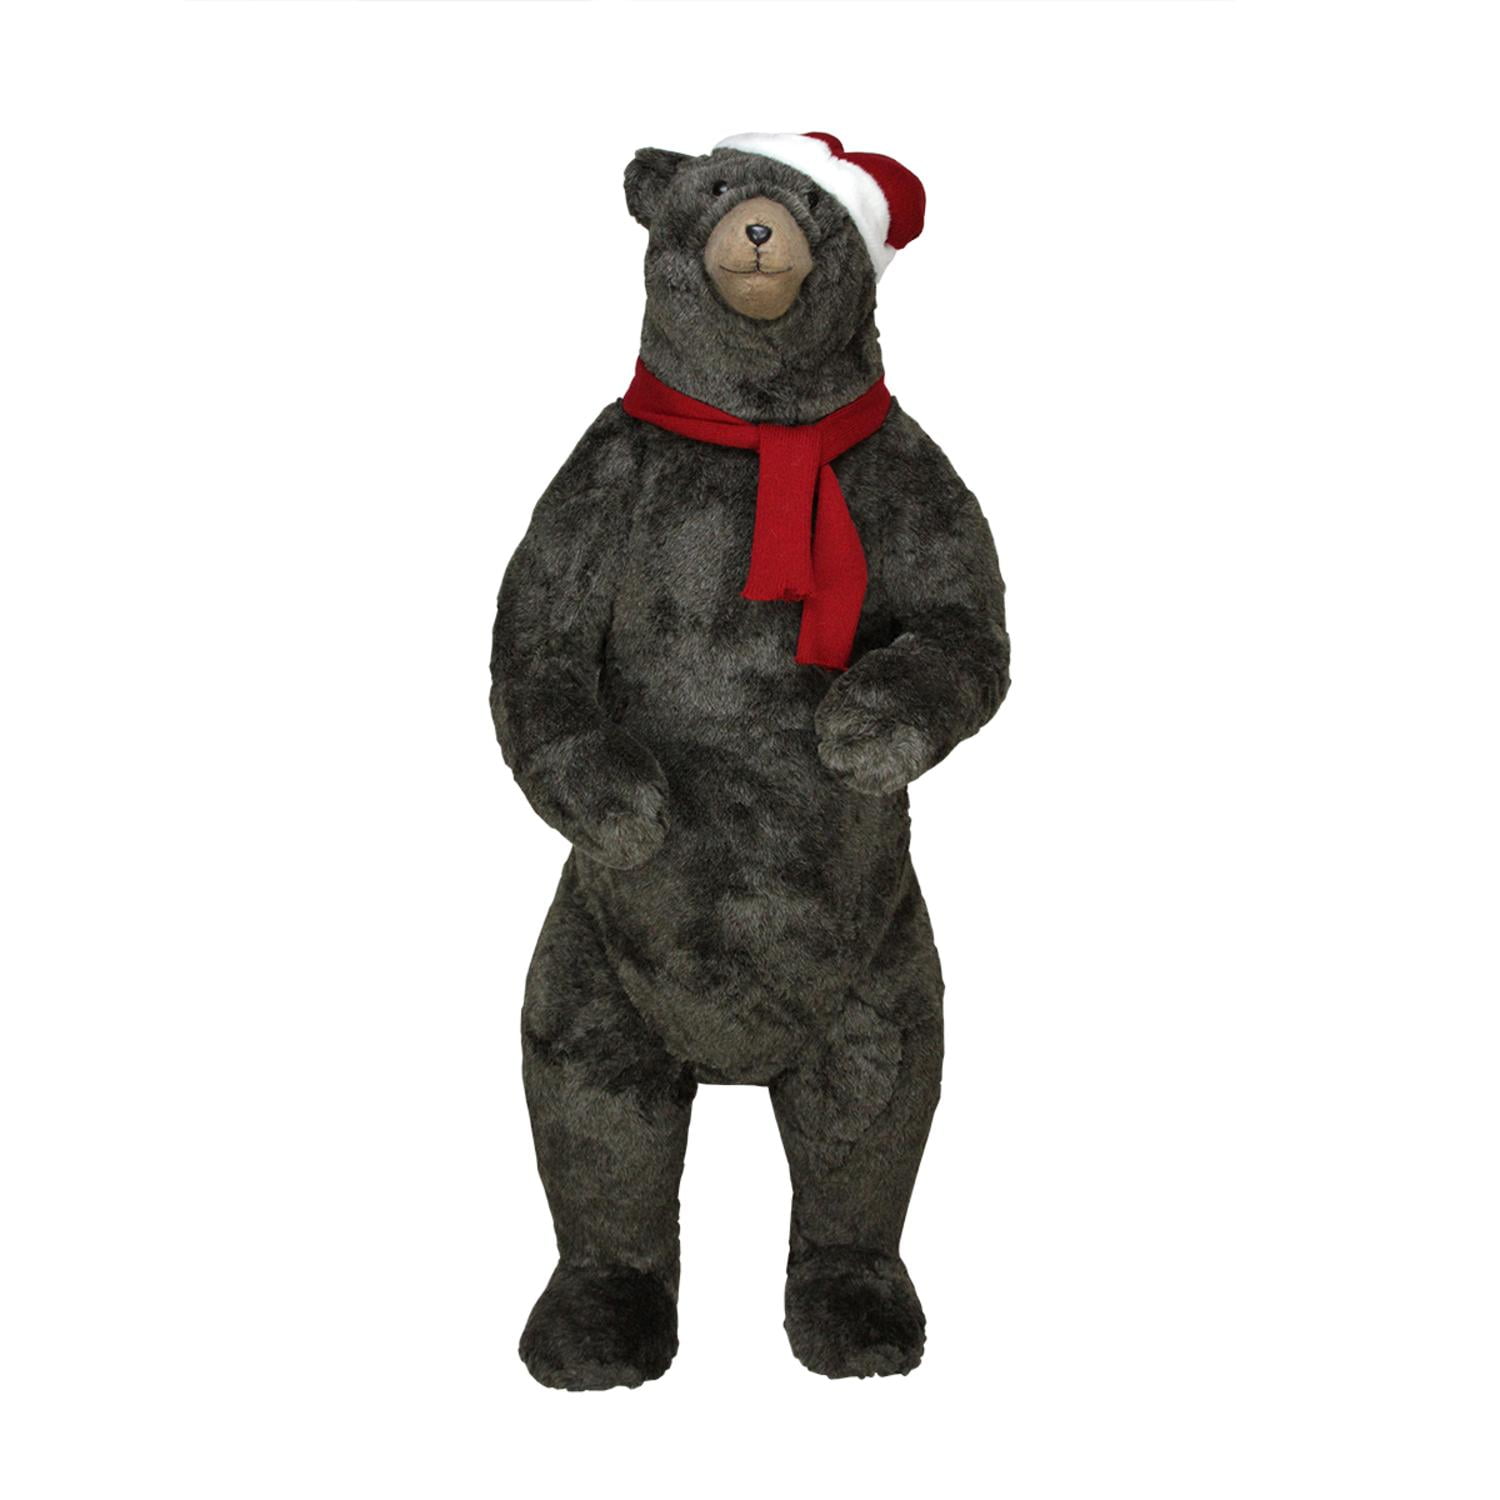 walmart christmas teddy bear commercial 2018